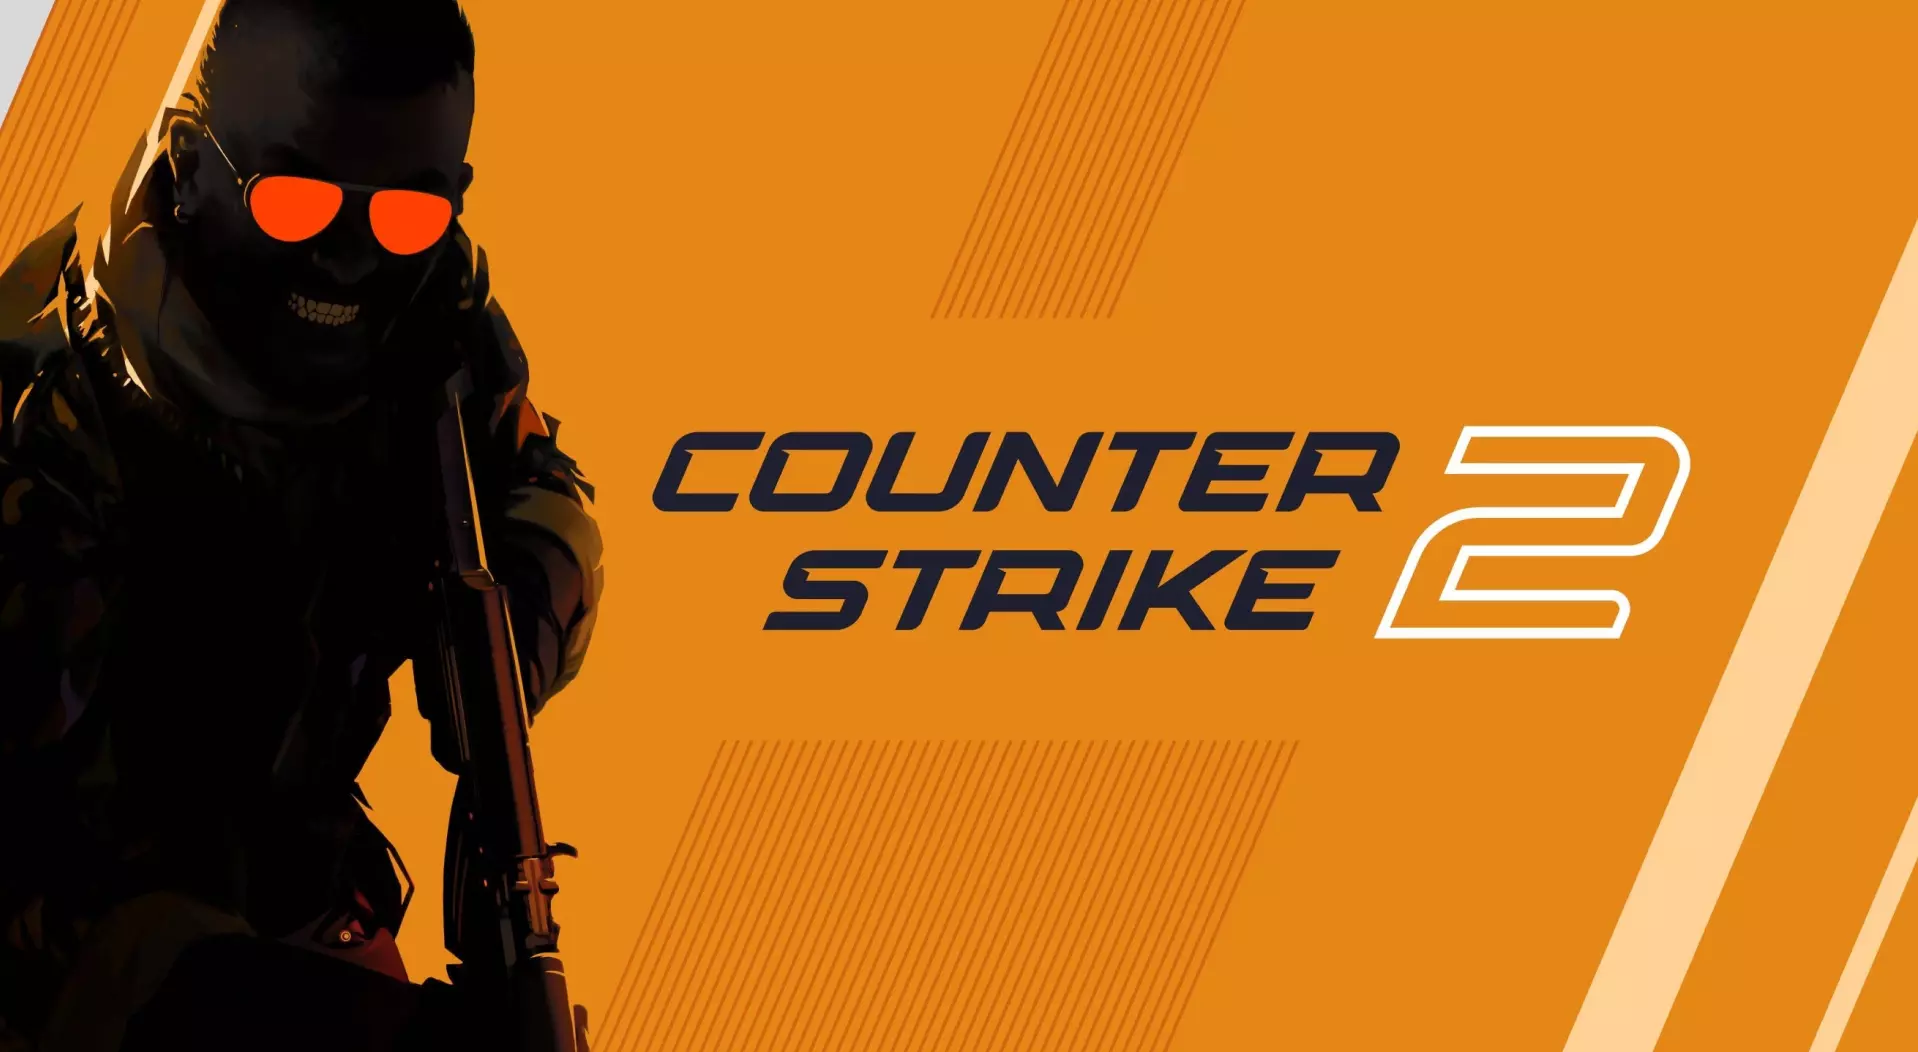 Valve släpper stor uppdatering för Counter-Strike 2, med bland annat vänsterhänt siktning